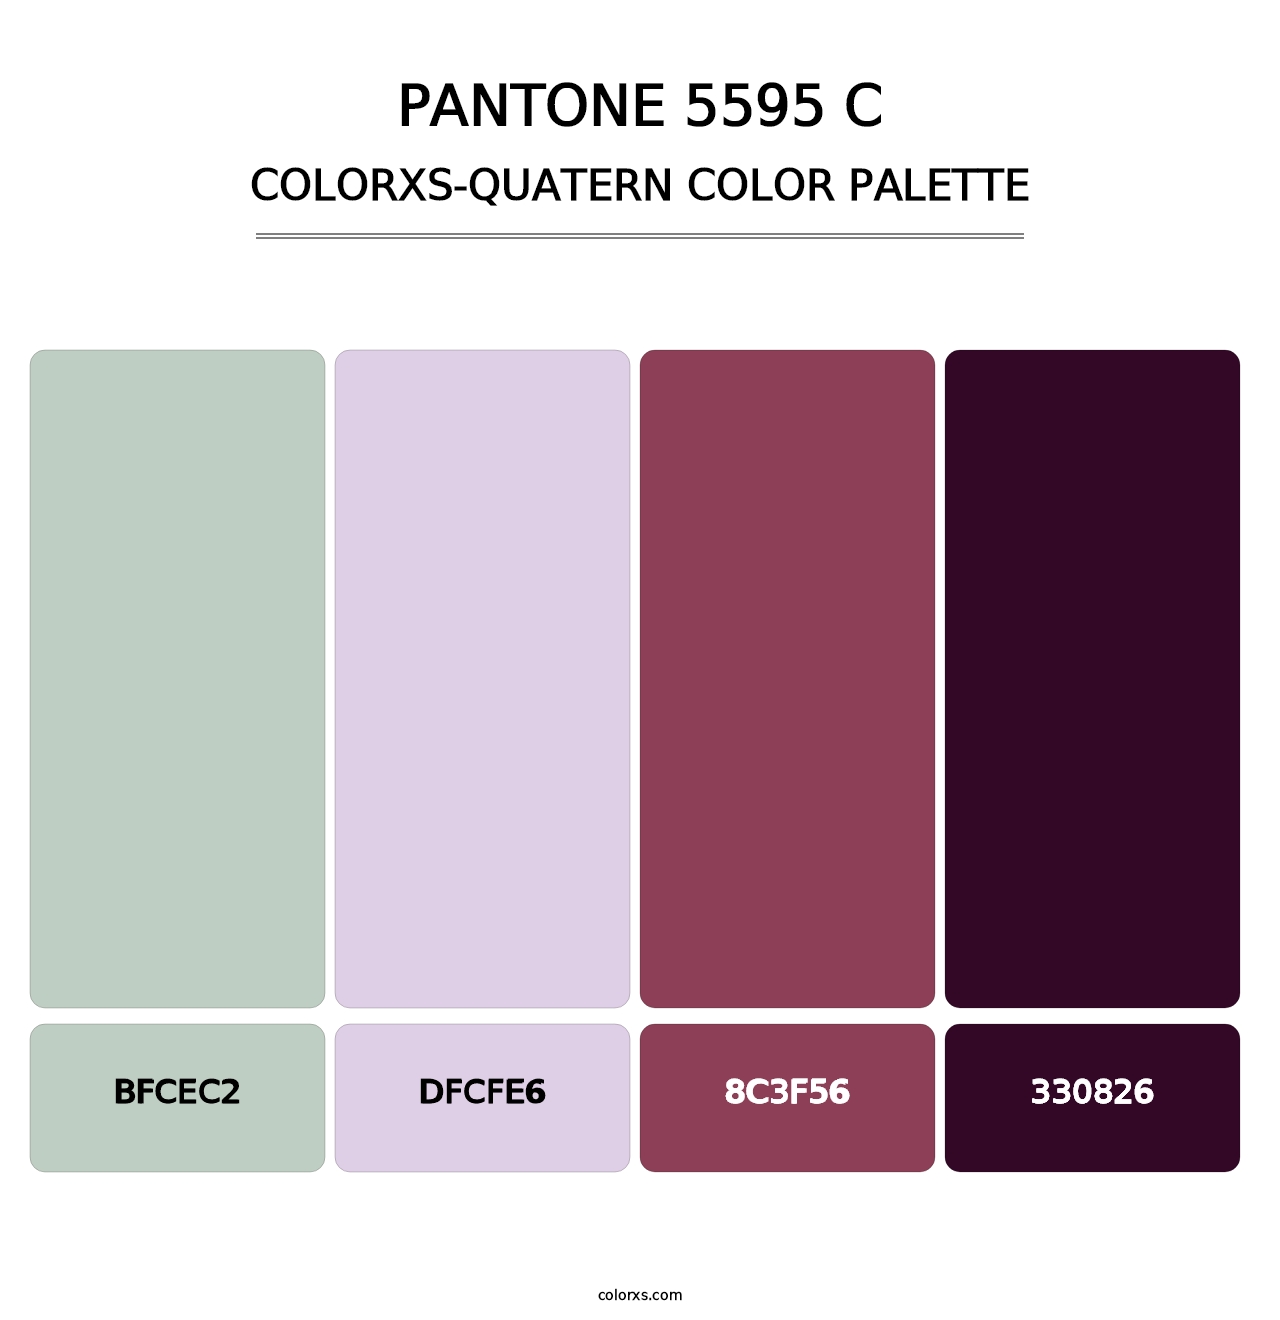 PANTONE 5595 C - Colorxs Quatern Palette